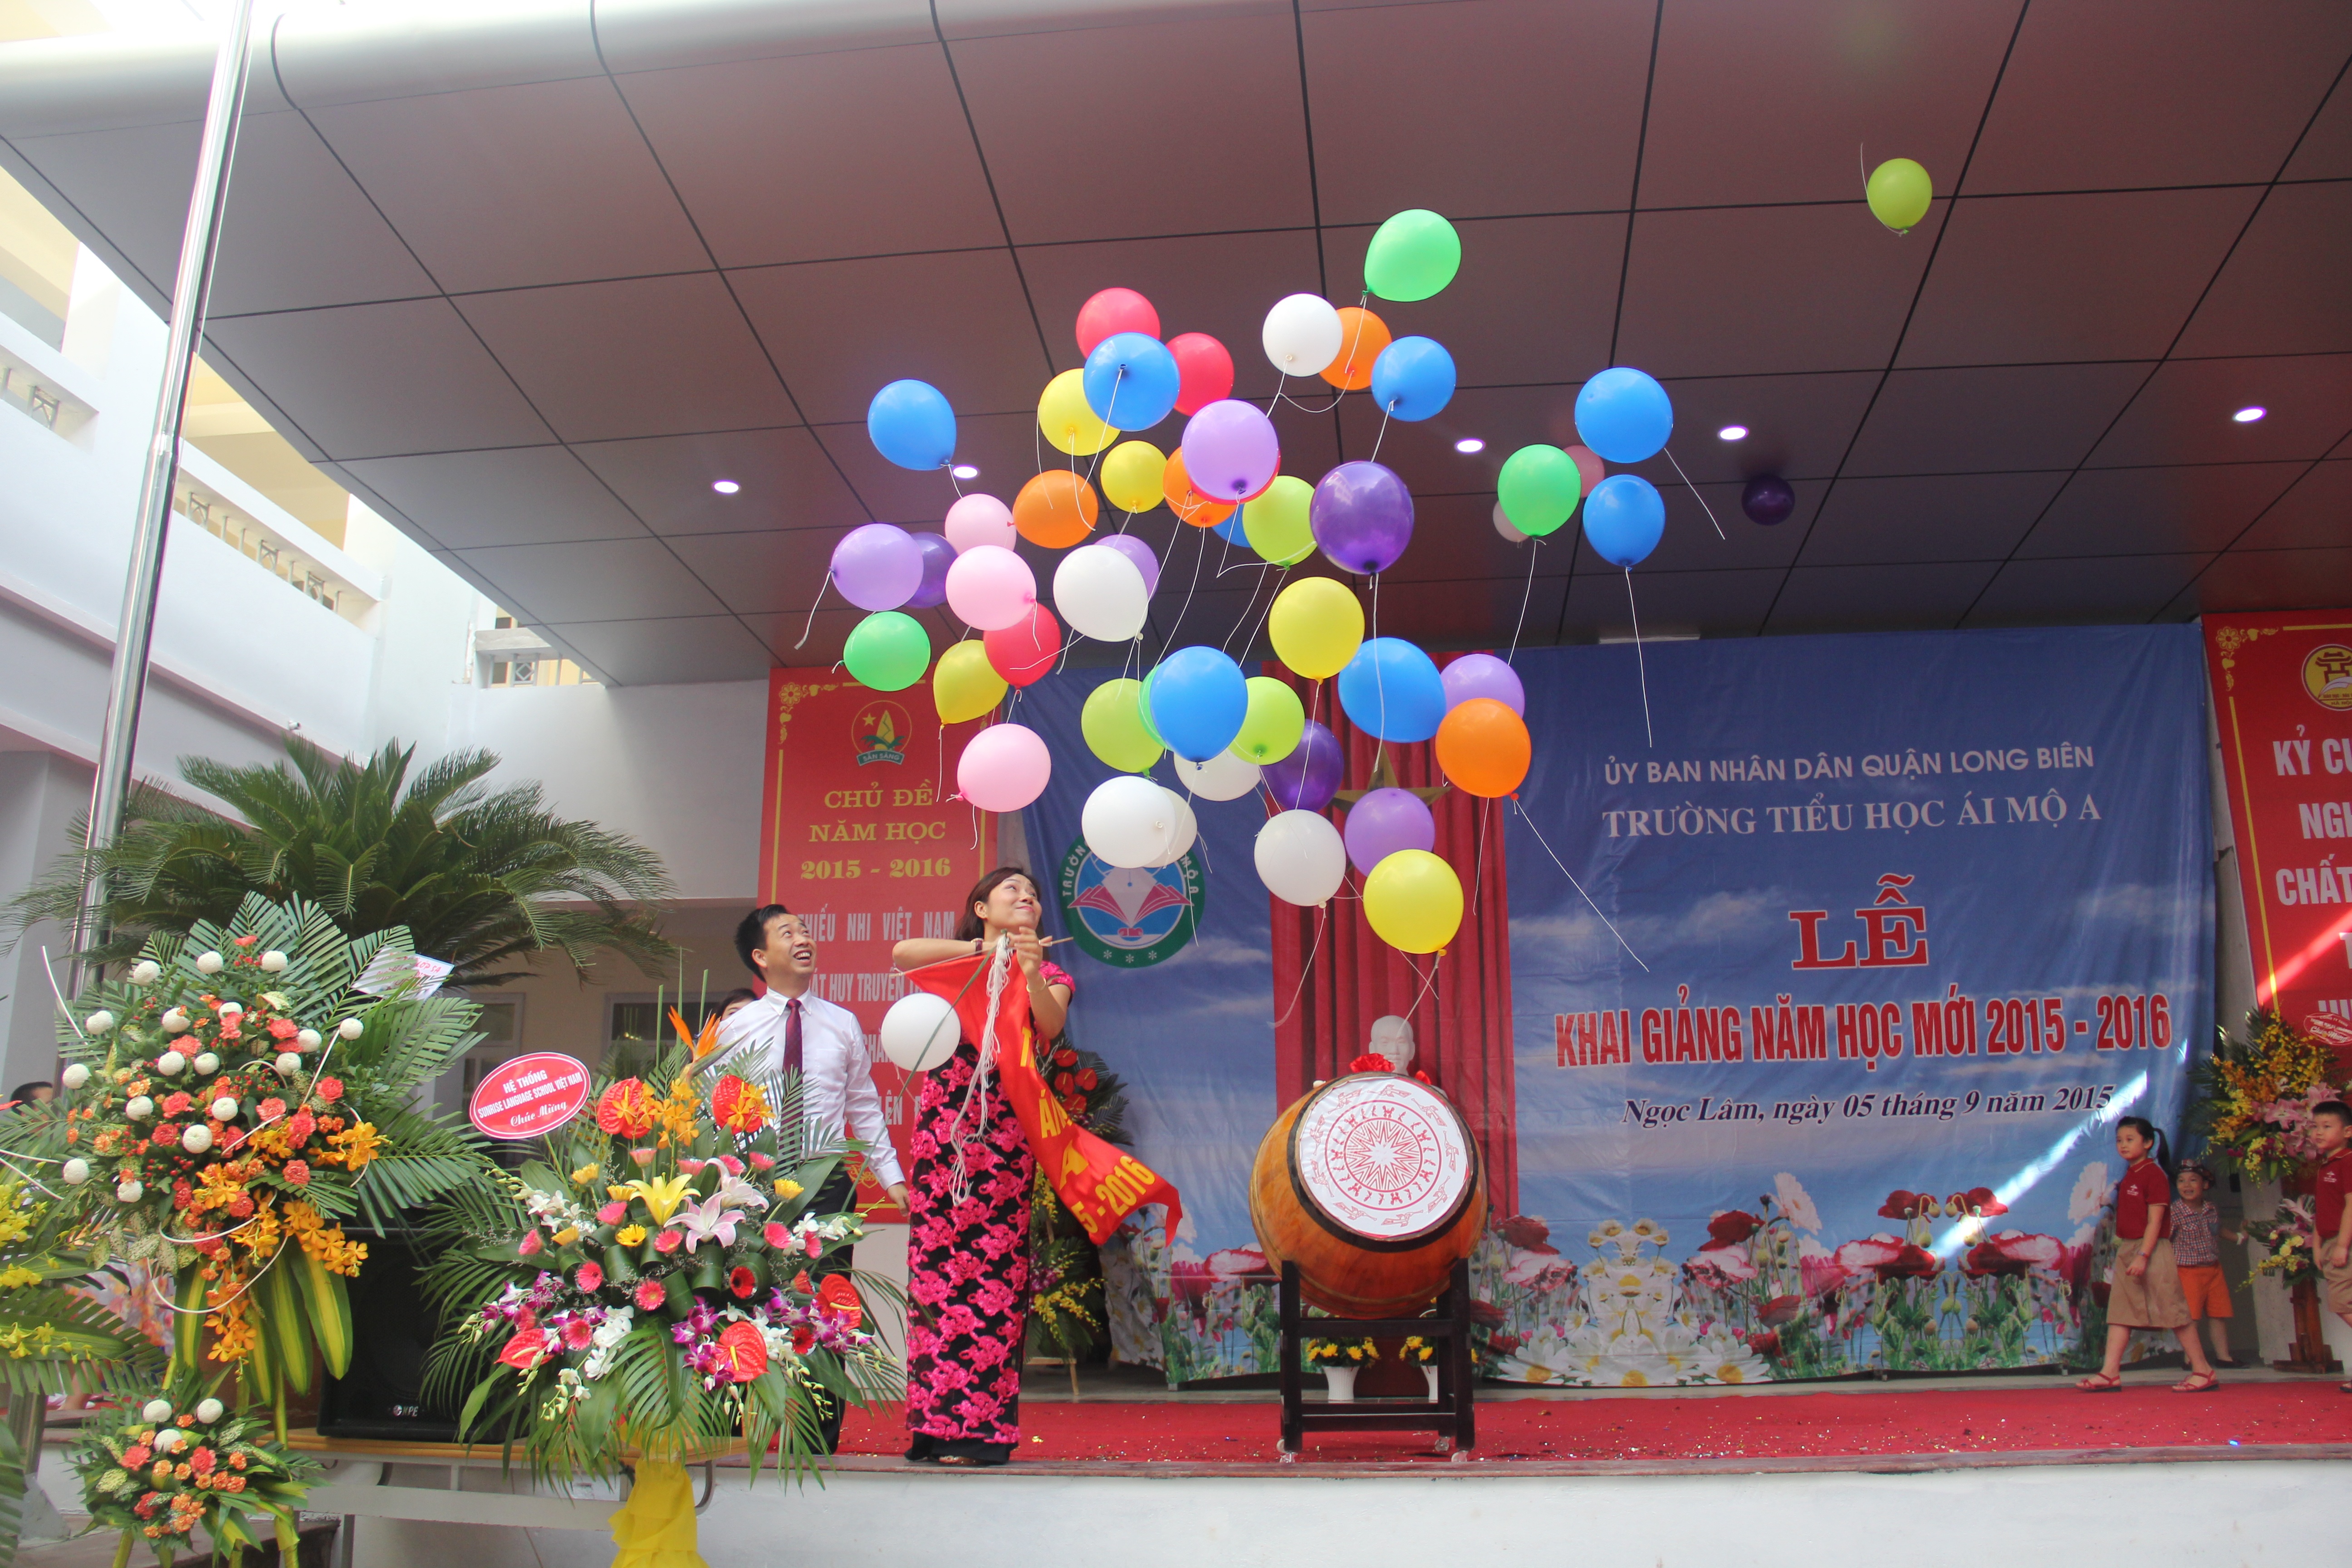 Màn đánh trống và thả bóng bay của đồng chí Nguyễn Thế Tuấn đã khép lại lễ khai giảng năm học mới 2015-2016